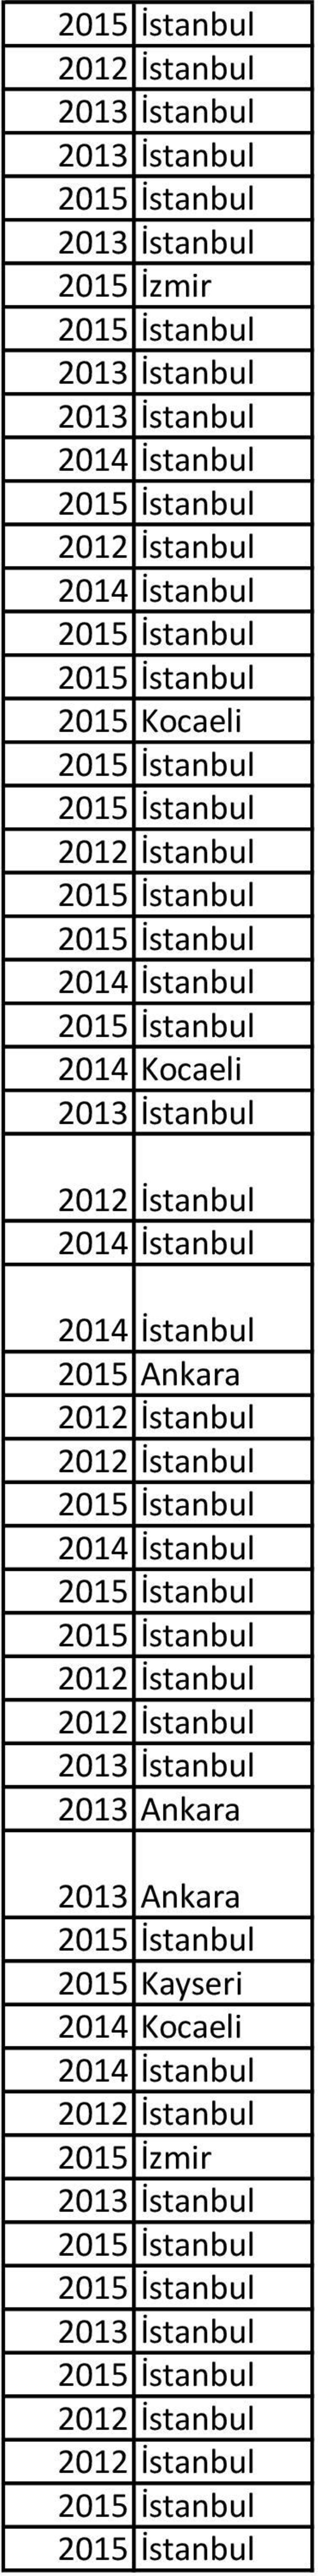 2013 Ankara 2013